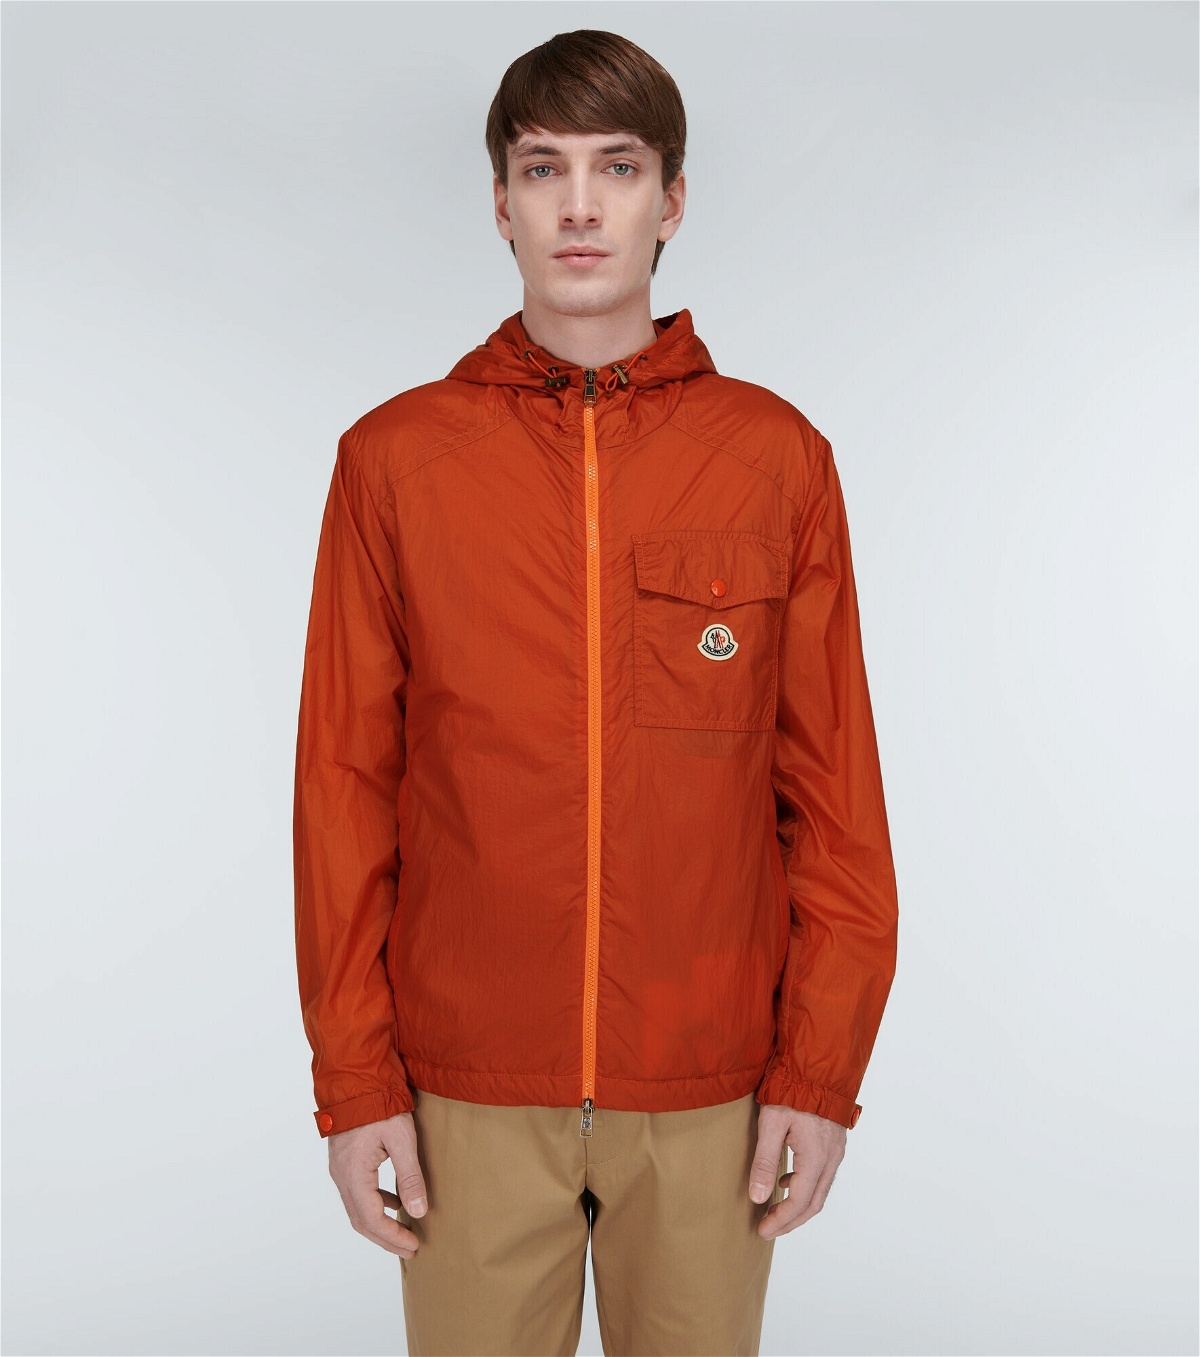 Moncler - Samakar zip-up jacket Moncler